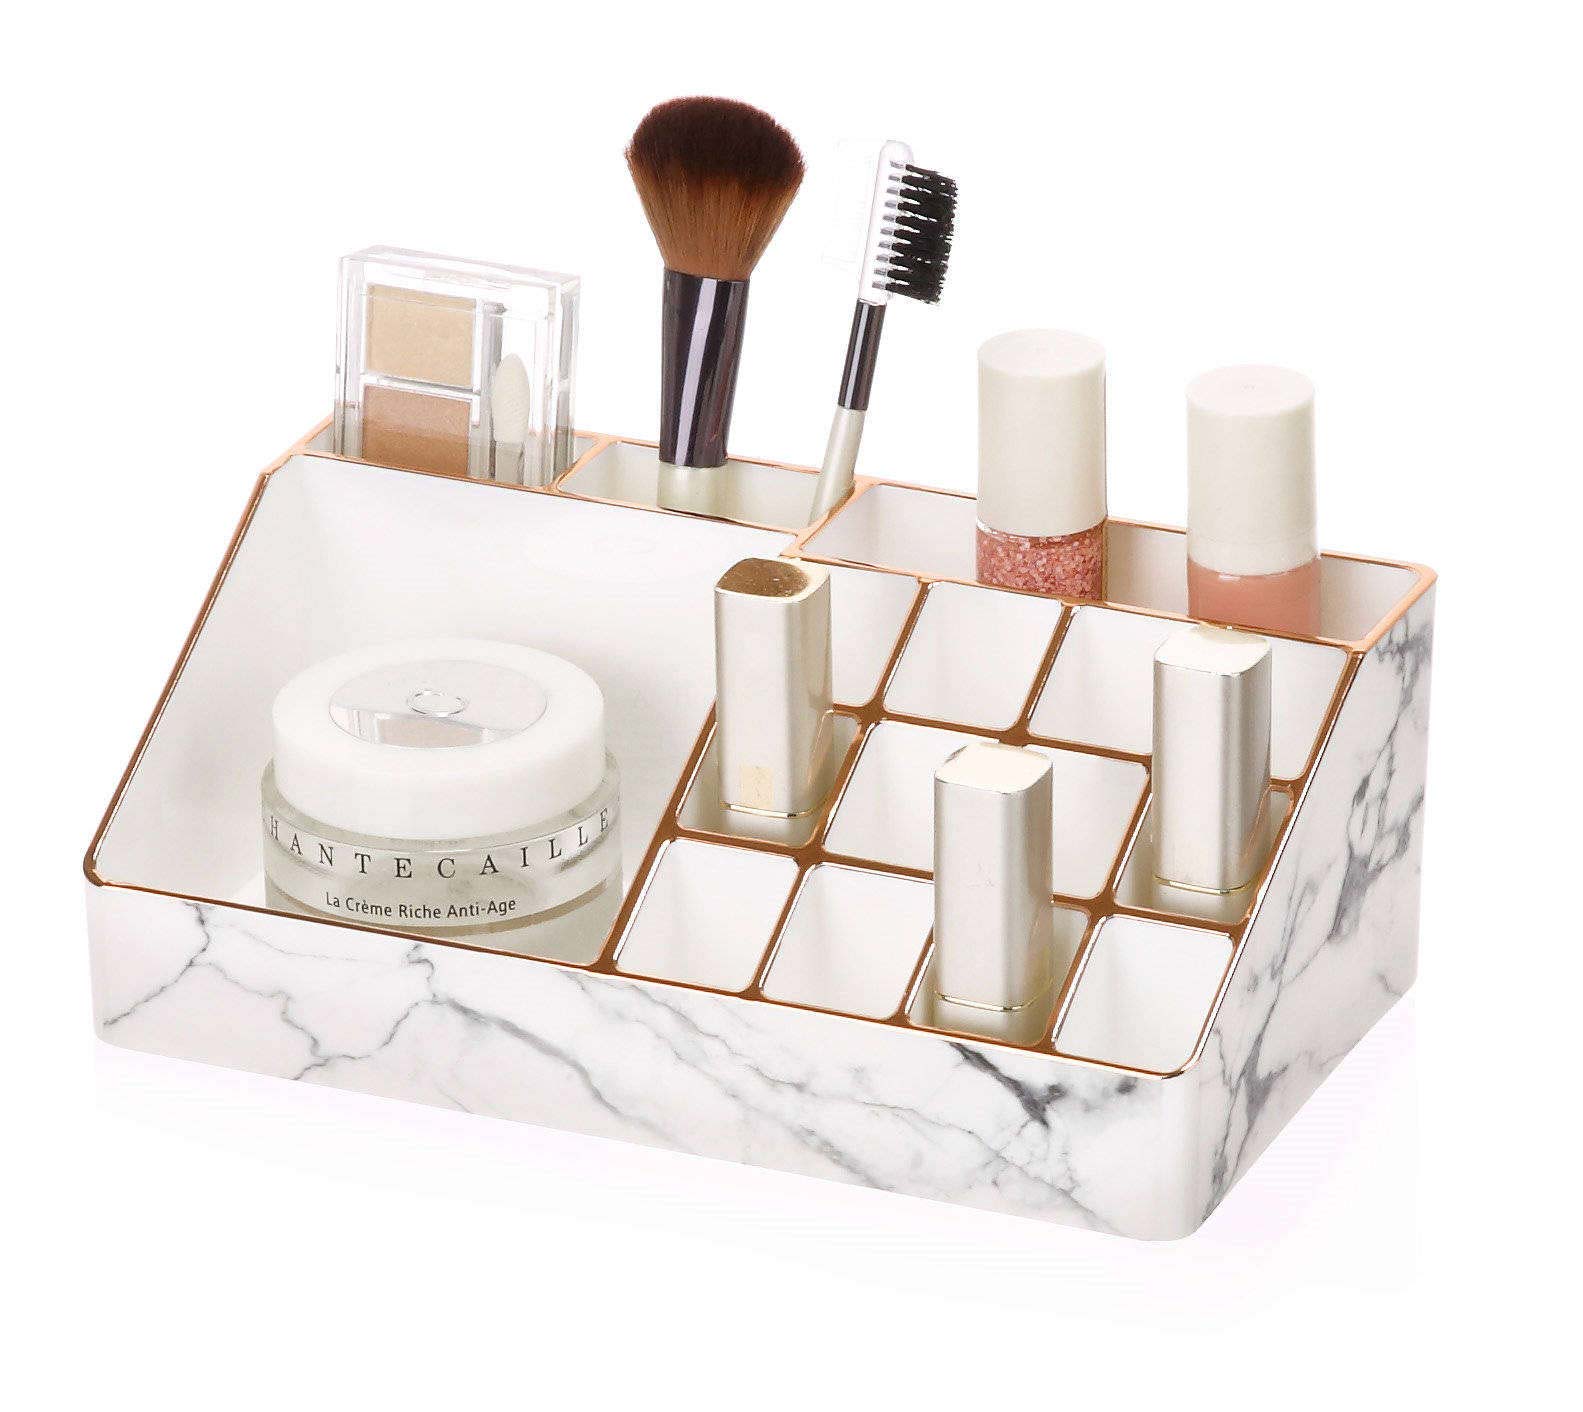 Nuevo organizador de maquillaje cosmético de plástico PS caja de almacenamiento de belleza organizador de maquillaje se adapta a caja de cajón pequeña